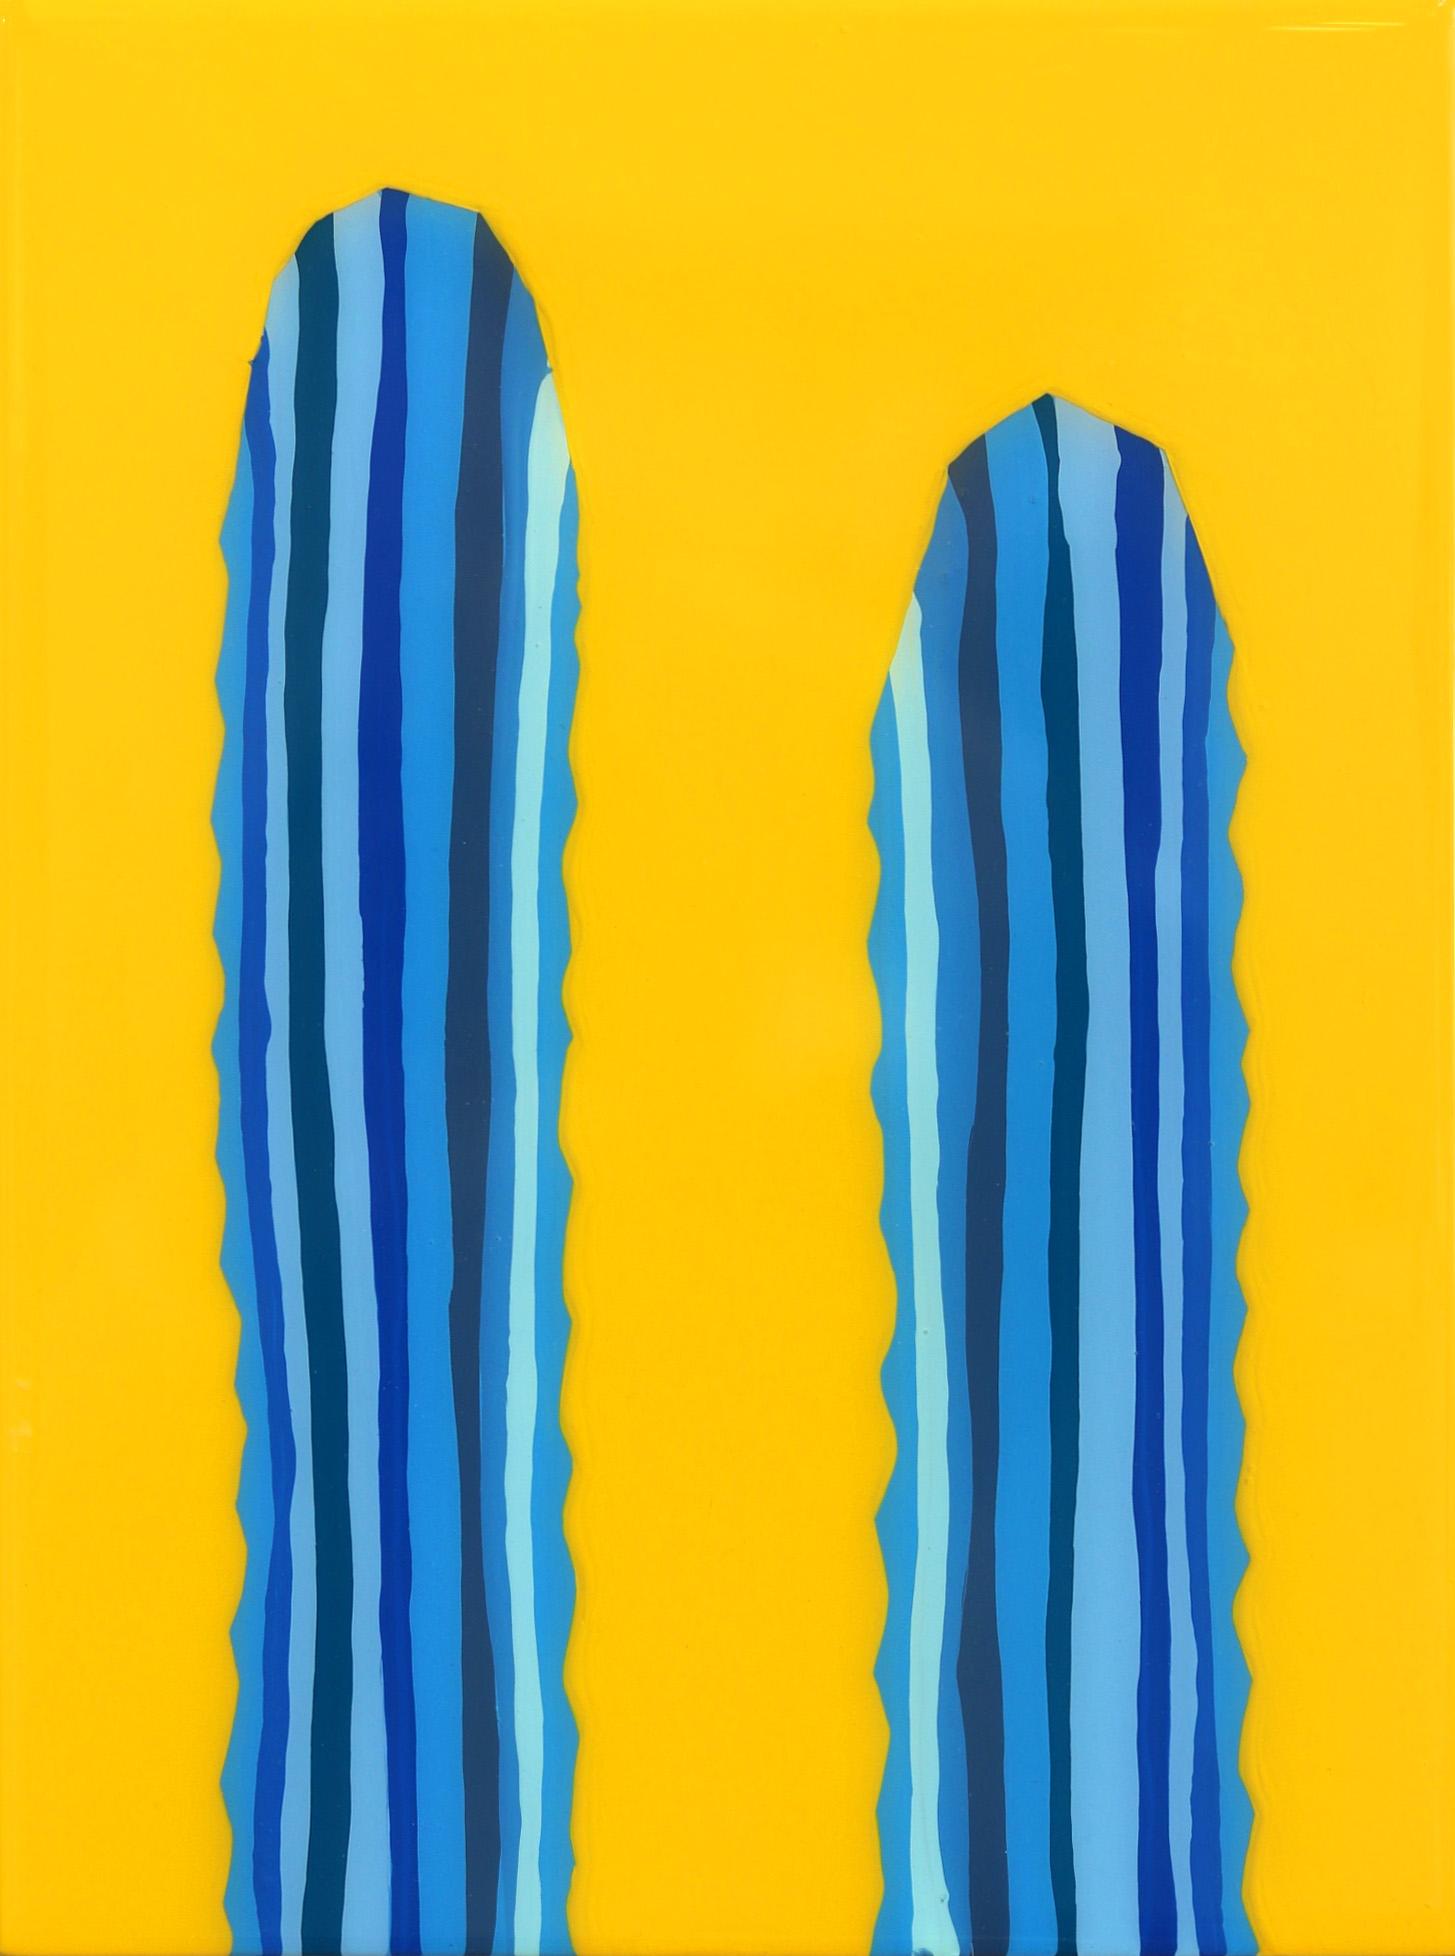 Peinture de cactus pop art d'inspiration sud-ouest, jaune et bleu vif